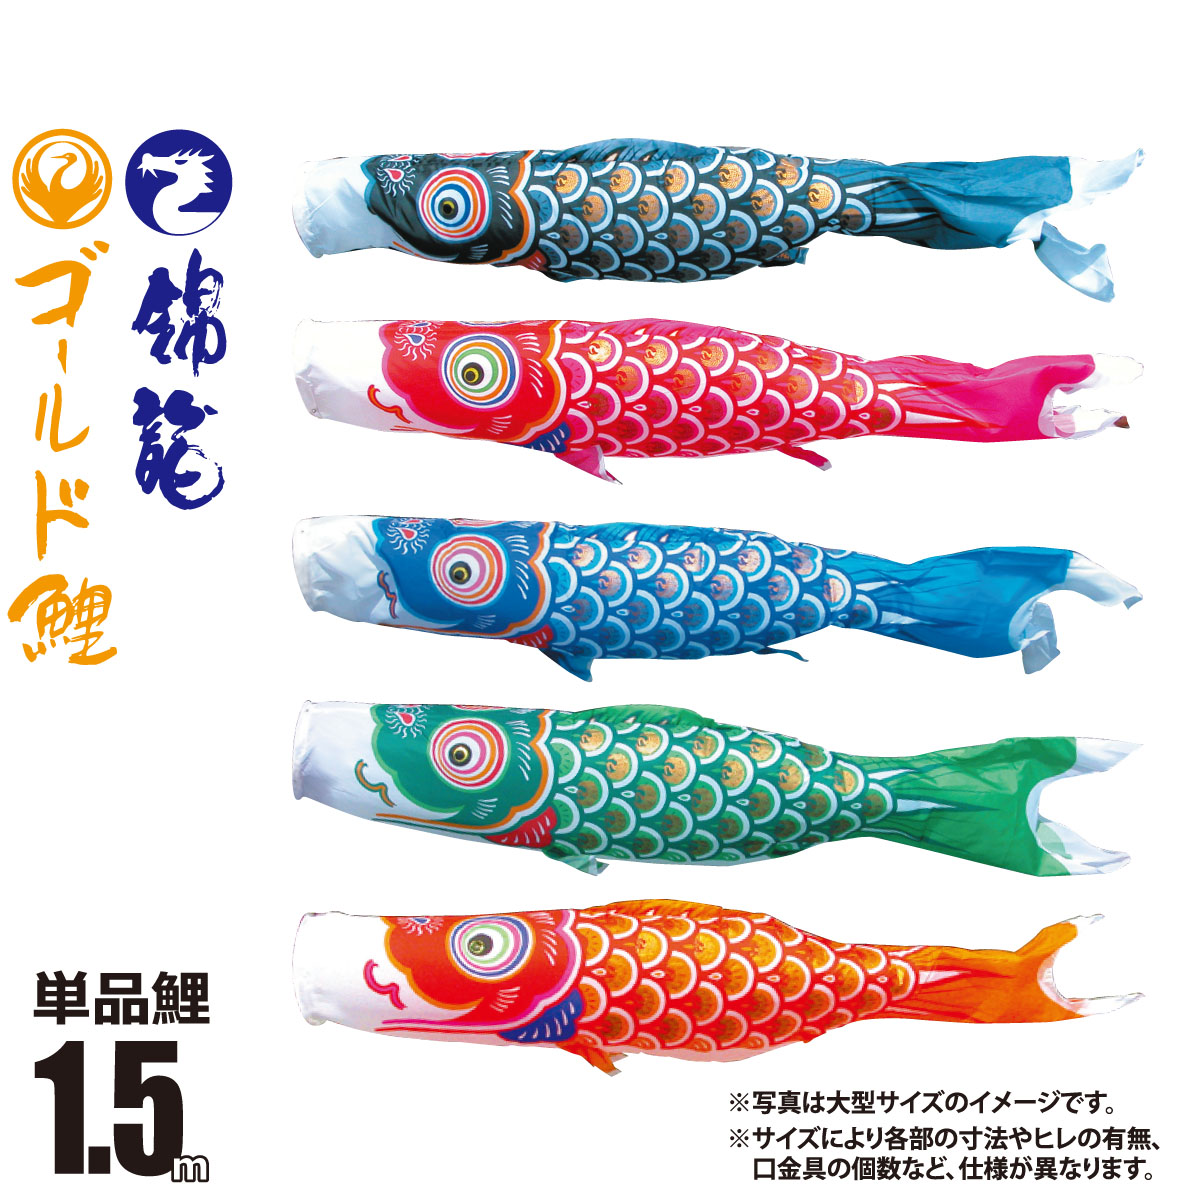 【楽天市場】鯉のぼり 単品 友禅鯉 1.5m 口金具付き カラー 黒鯉|赤 